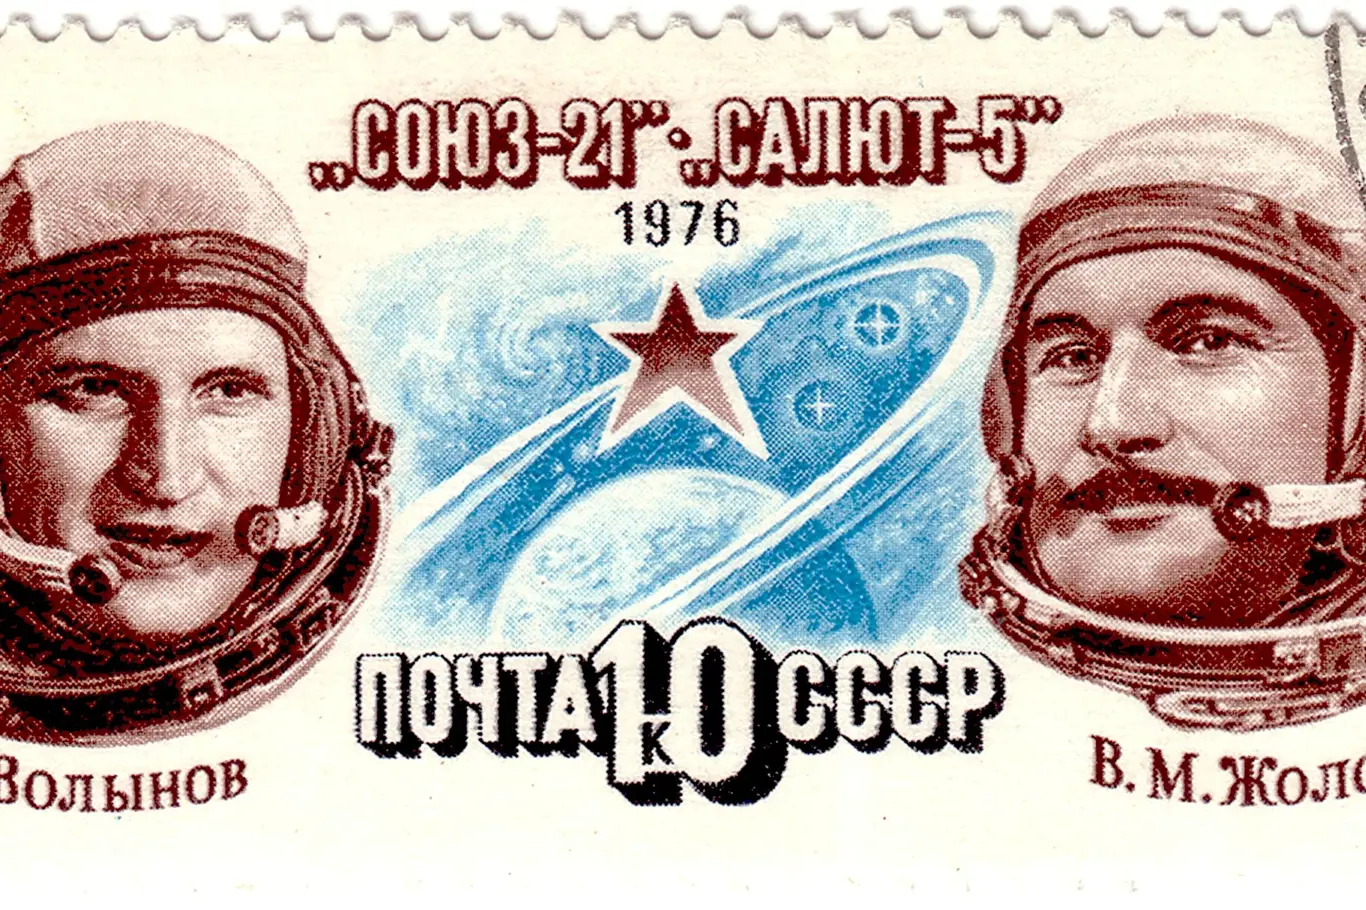 Boris Volynov (vlevo) a Vitalij Žolobov na sovětské poštovní známce coby hrdinové